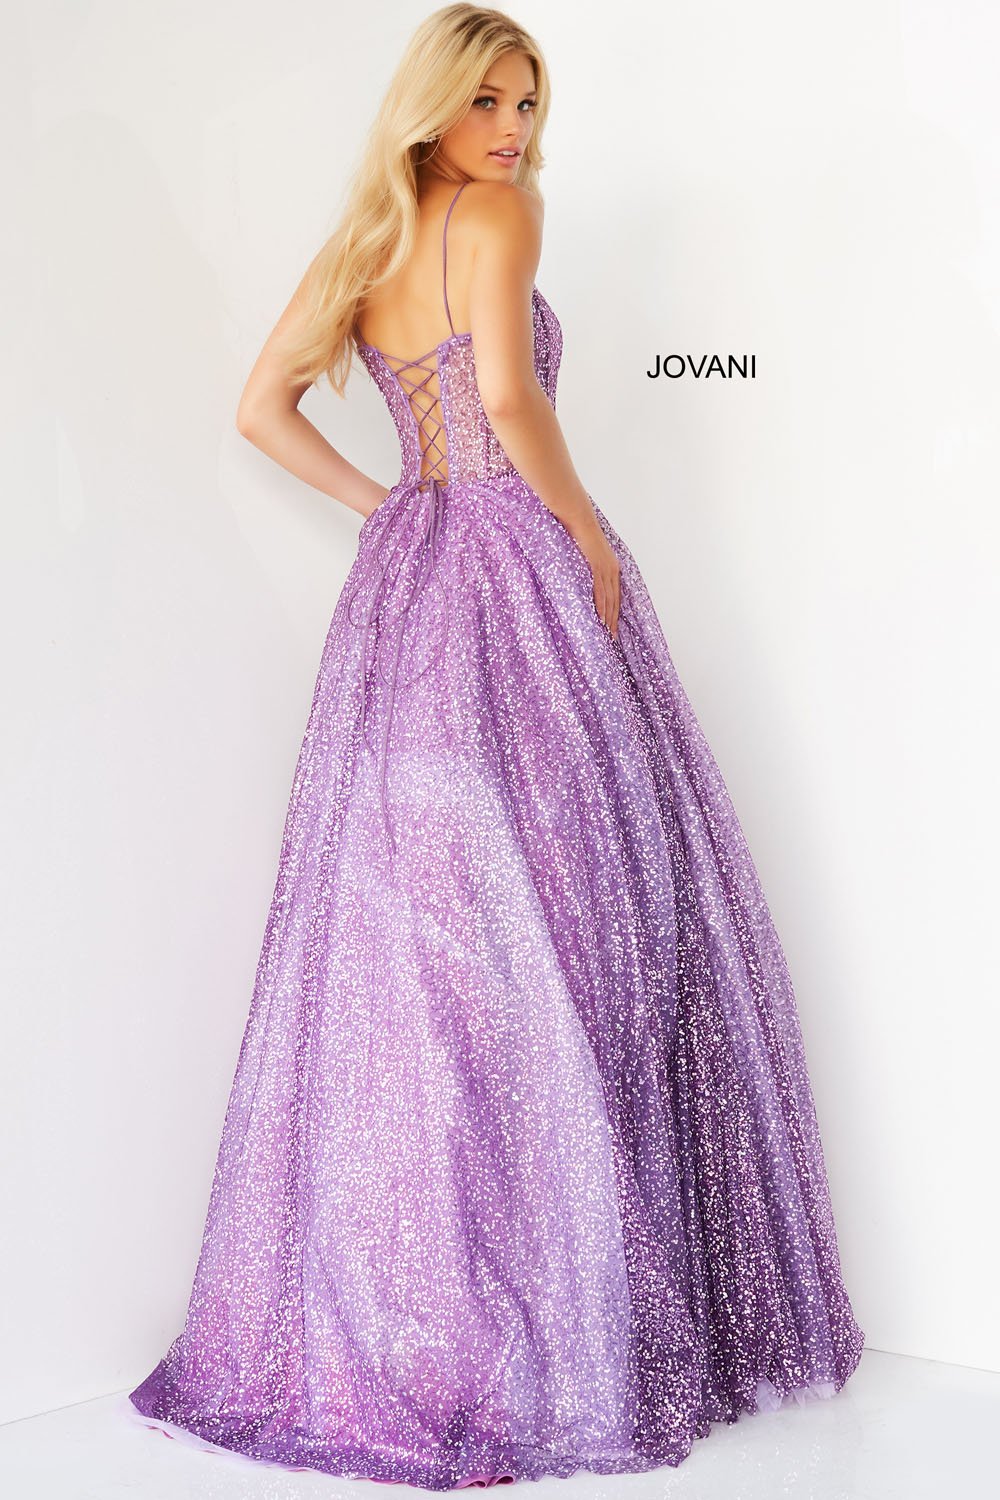 Jovani 07423 Purple prom dresses images.